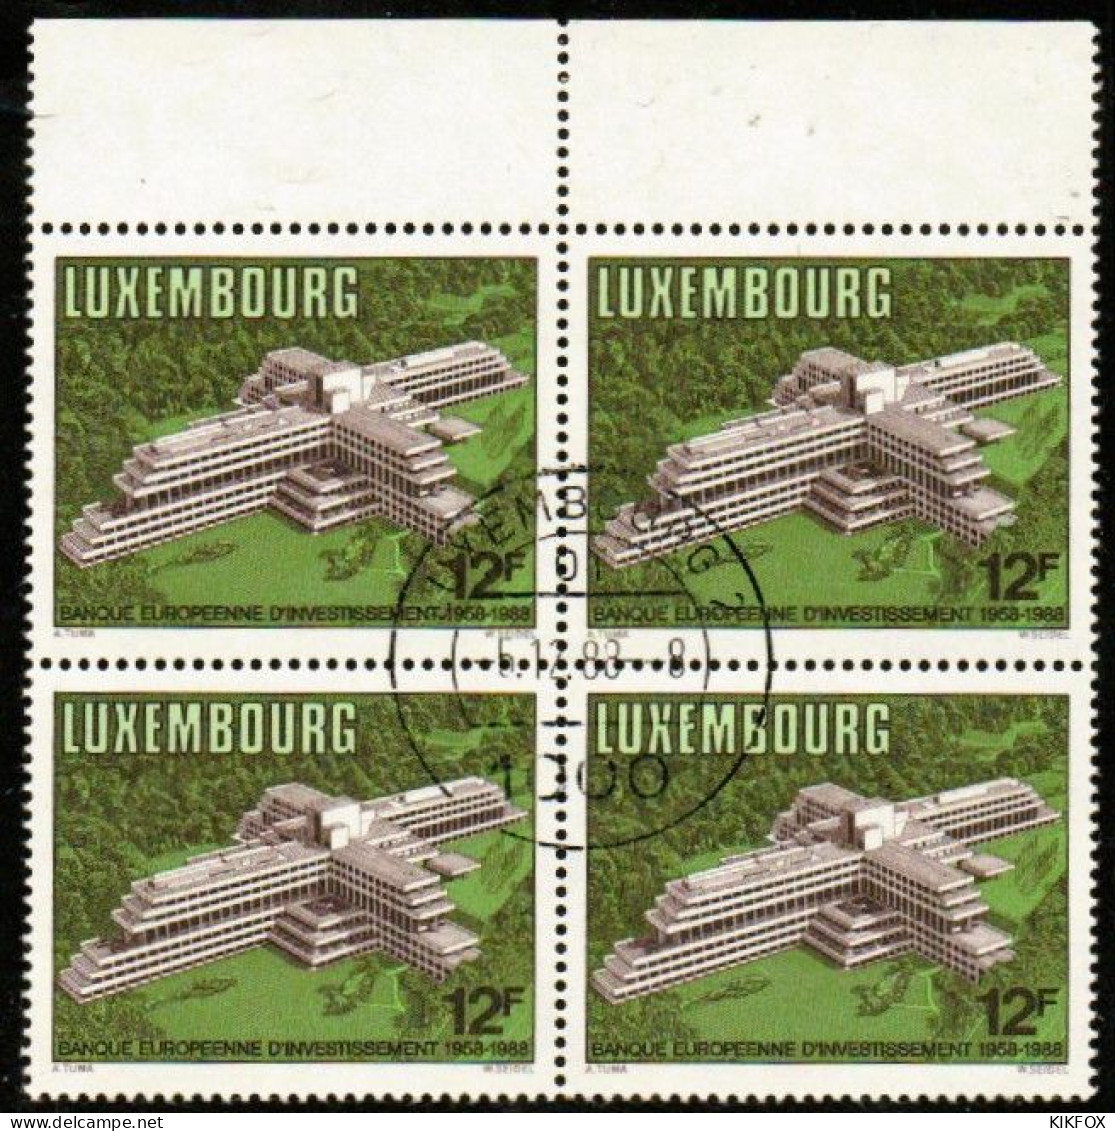 Luxembourg, Luxemburg,1988, MI 1208,YV 1158, VIERERBLOCK,30 JAHRE EUROPÄISCHE INVESTITIONSBANK (EIB),GESTEMPELT,OBLITERE - Gebraucht